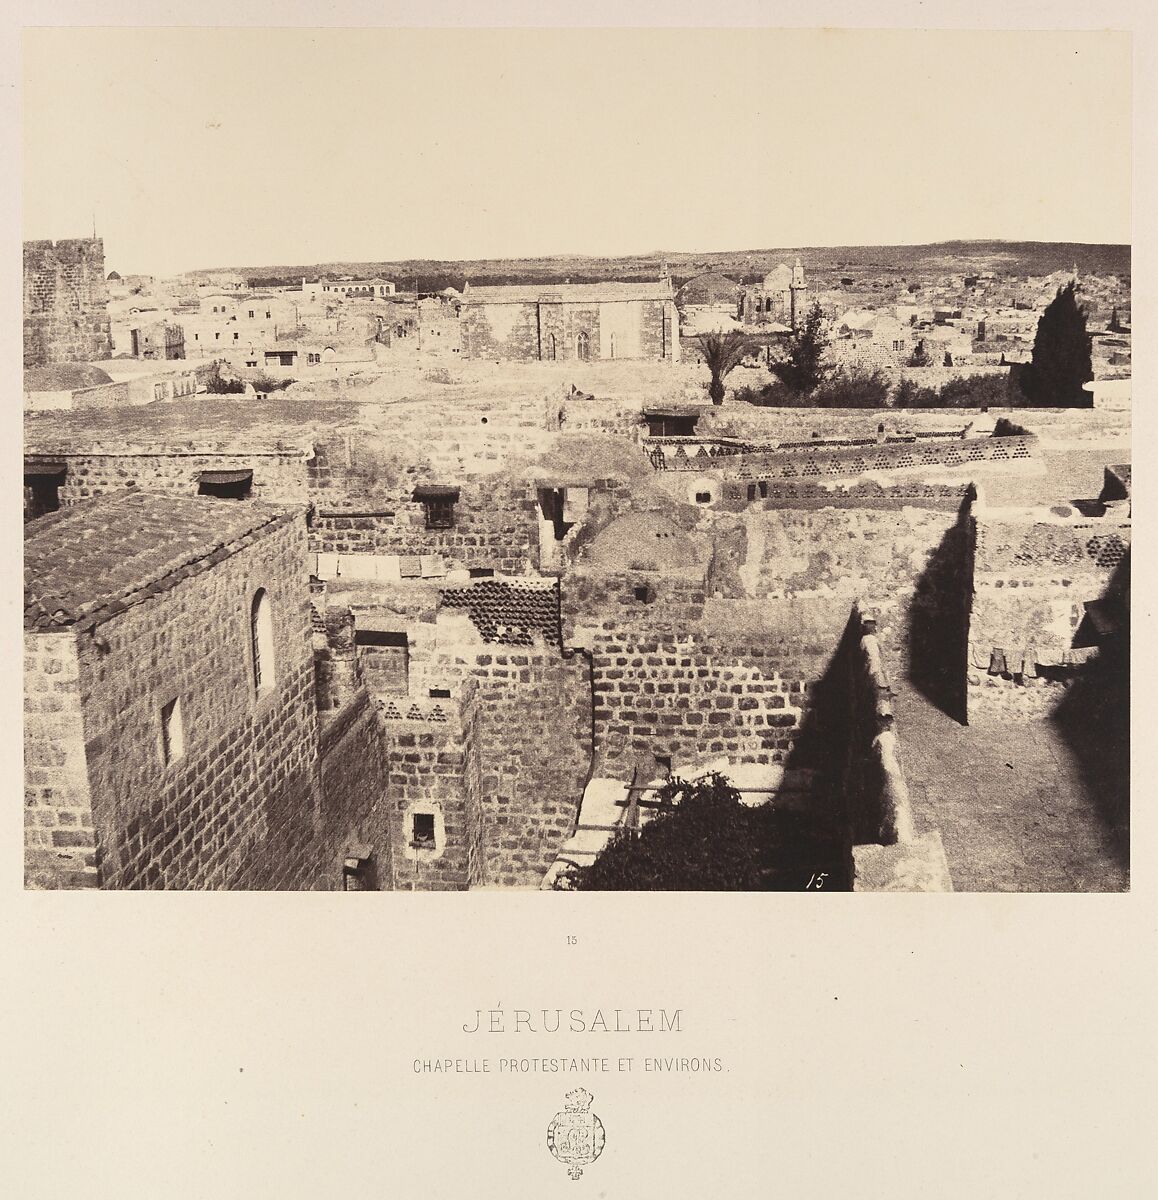 Jérusalem. Chapelle protestante et environs, Louis de Clercq (French, 1837–1901), Albumen silver print from paper negative 